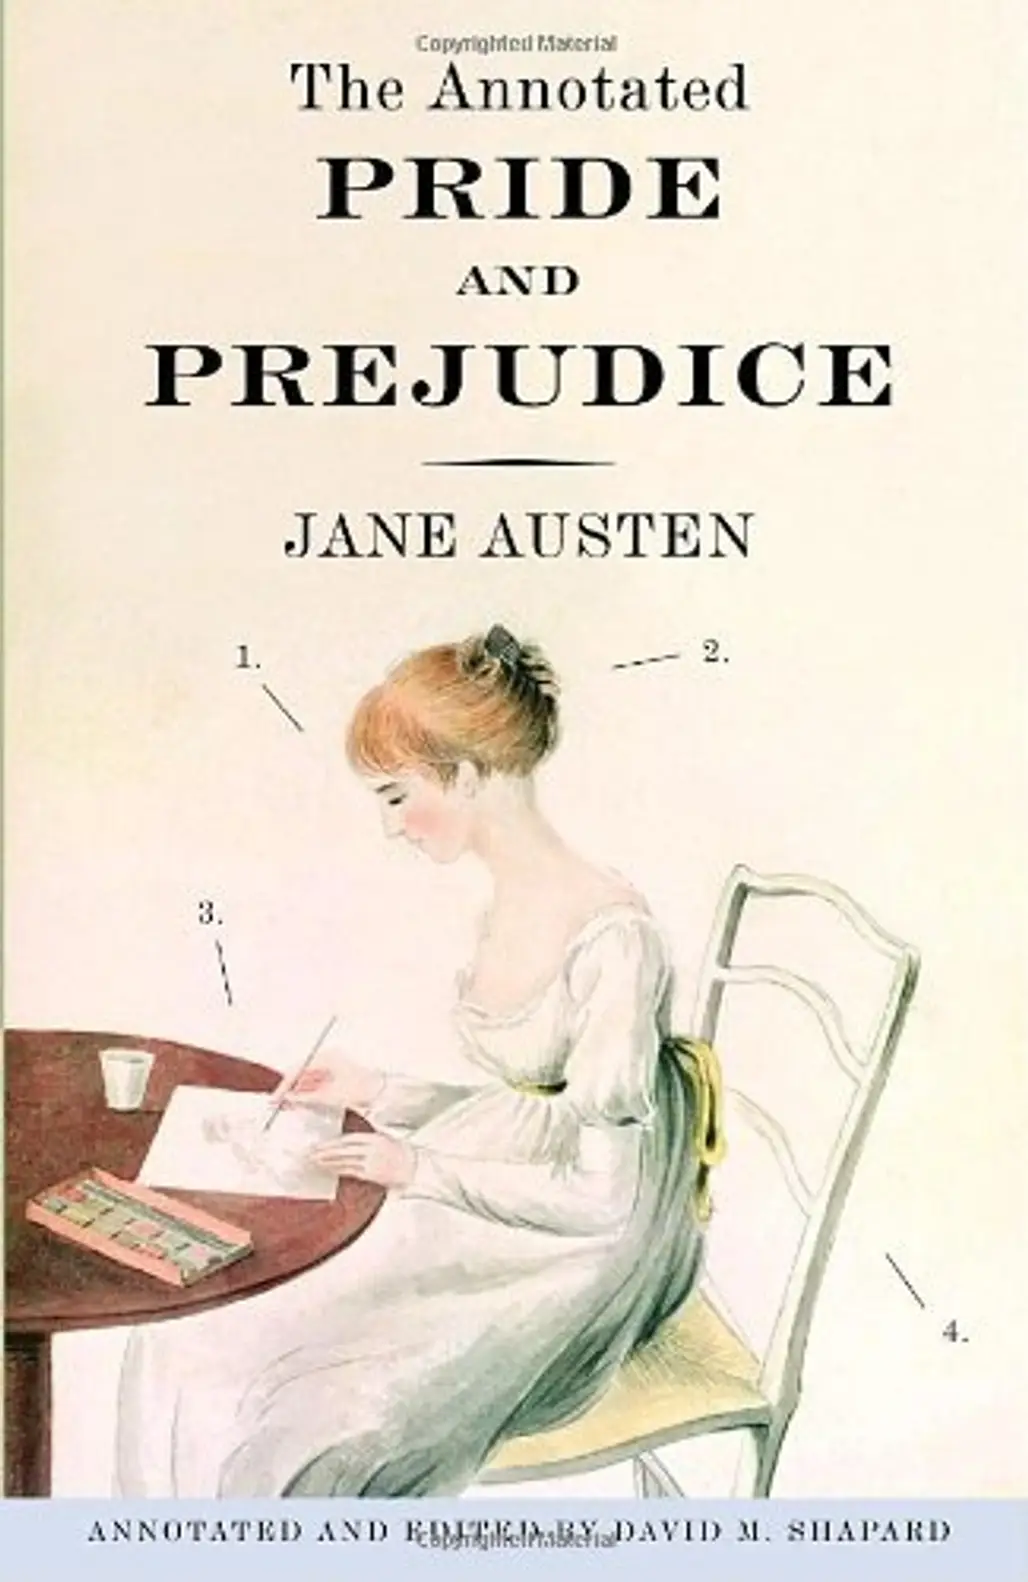 “Pride & Prejudice” by Jane Austen